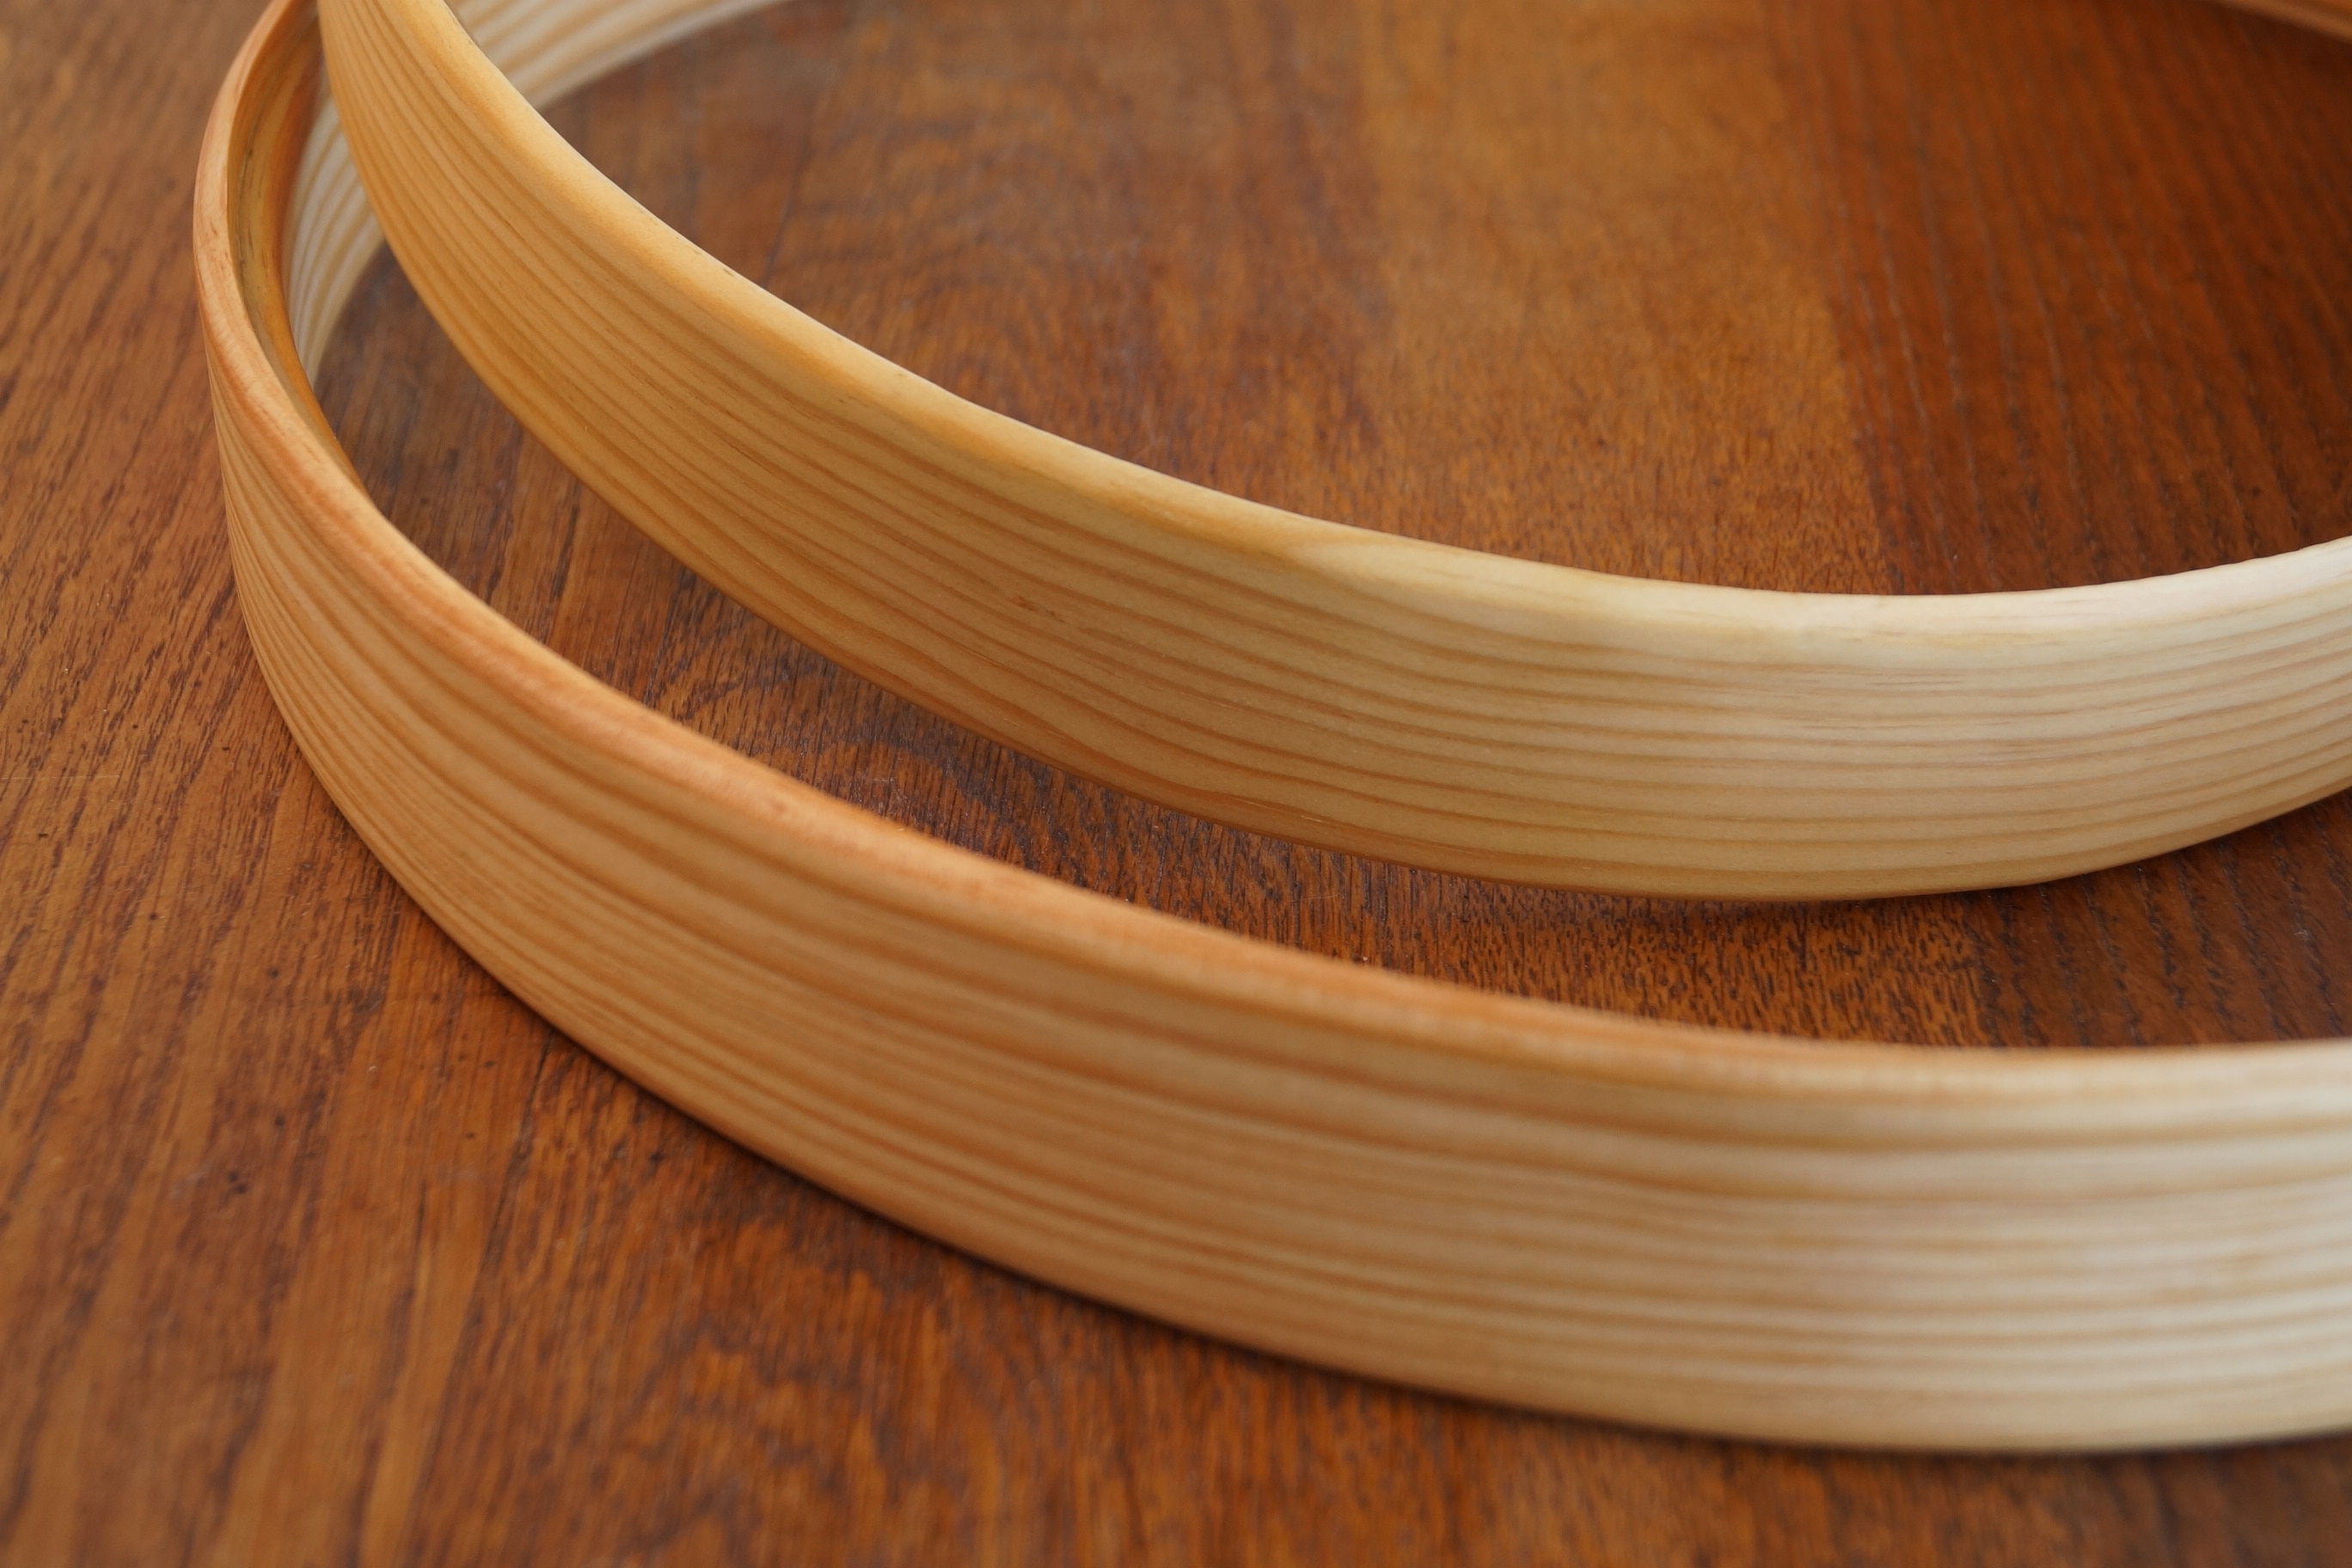 Tambour gnawa - Modèle traditionnel cercle bois